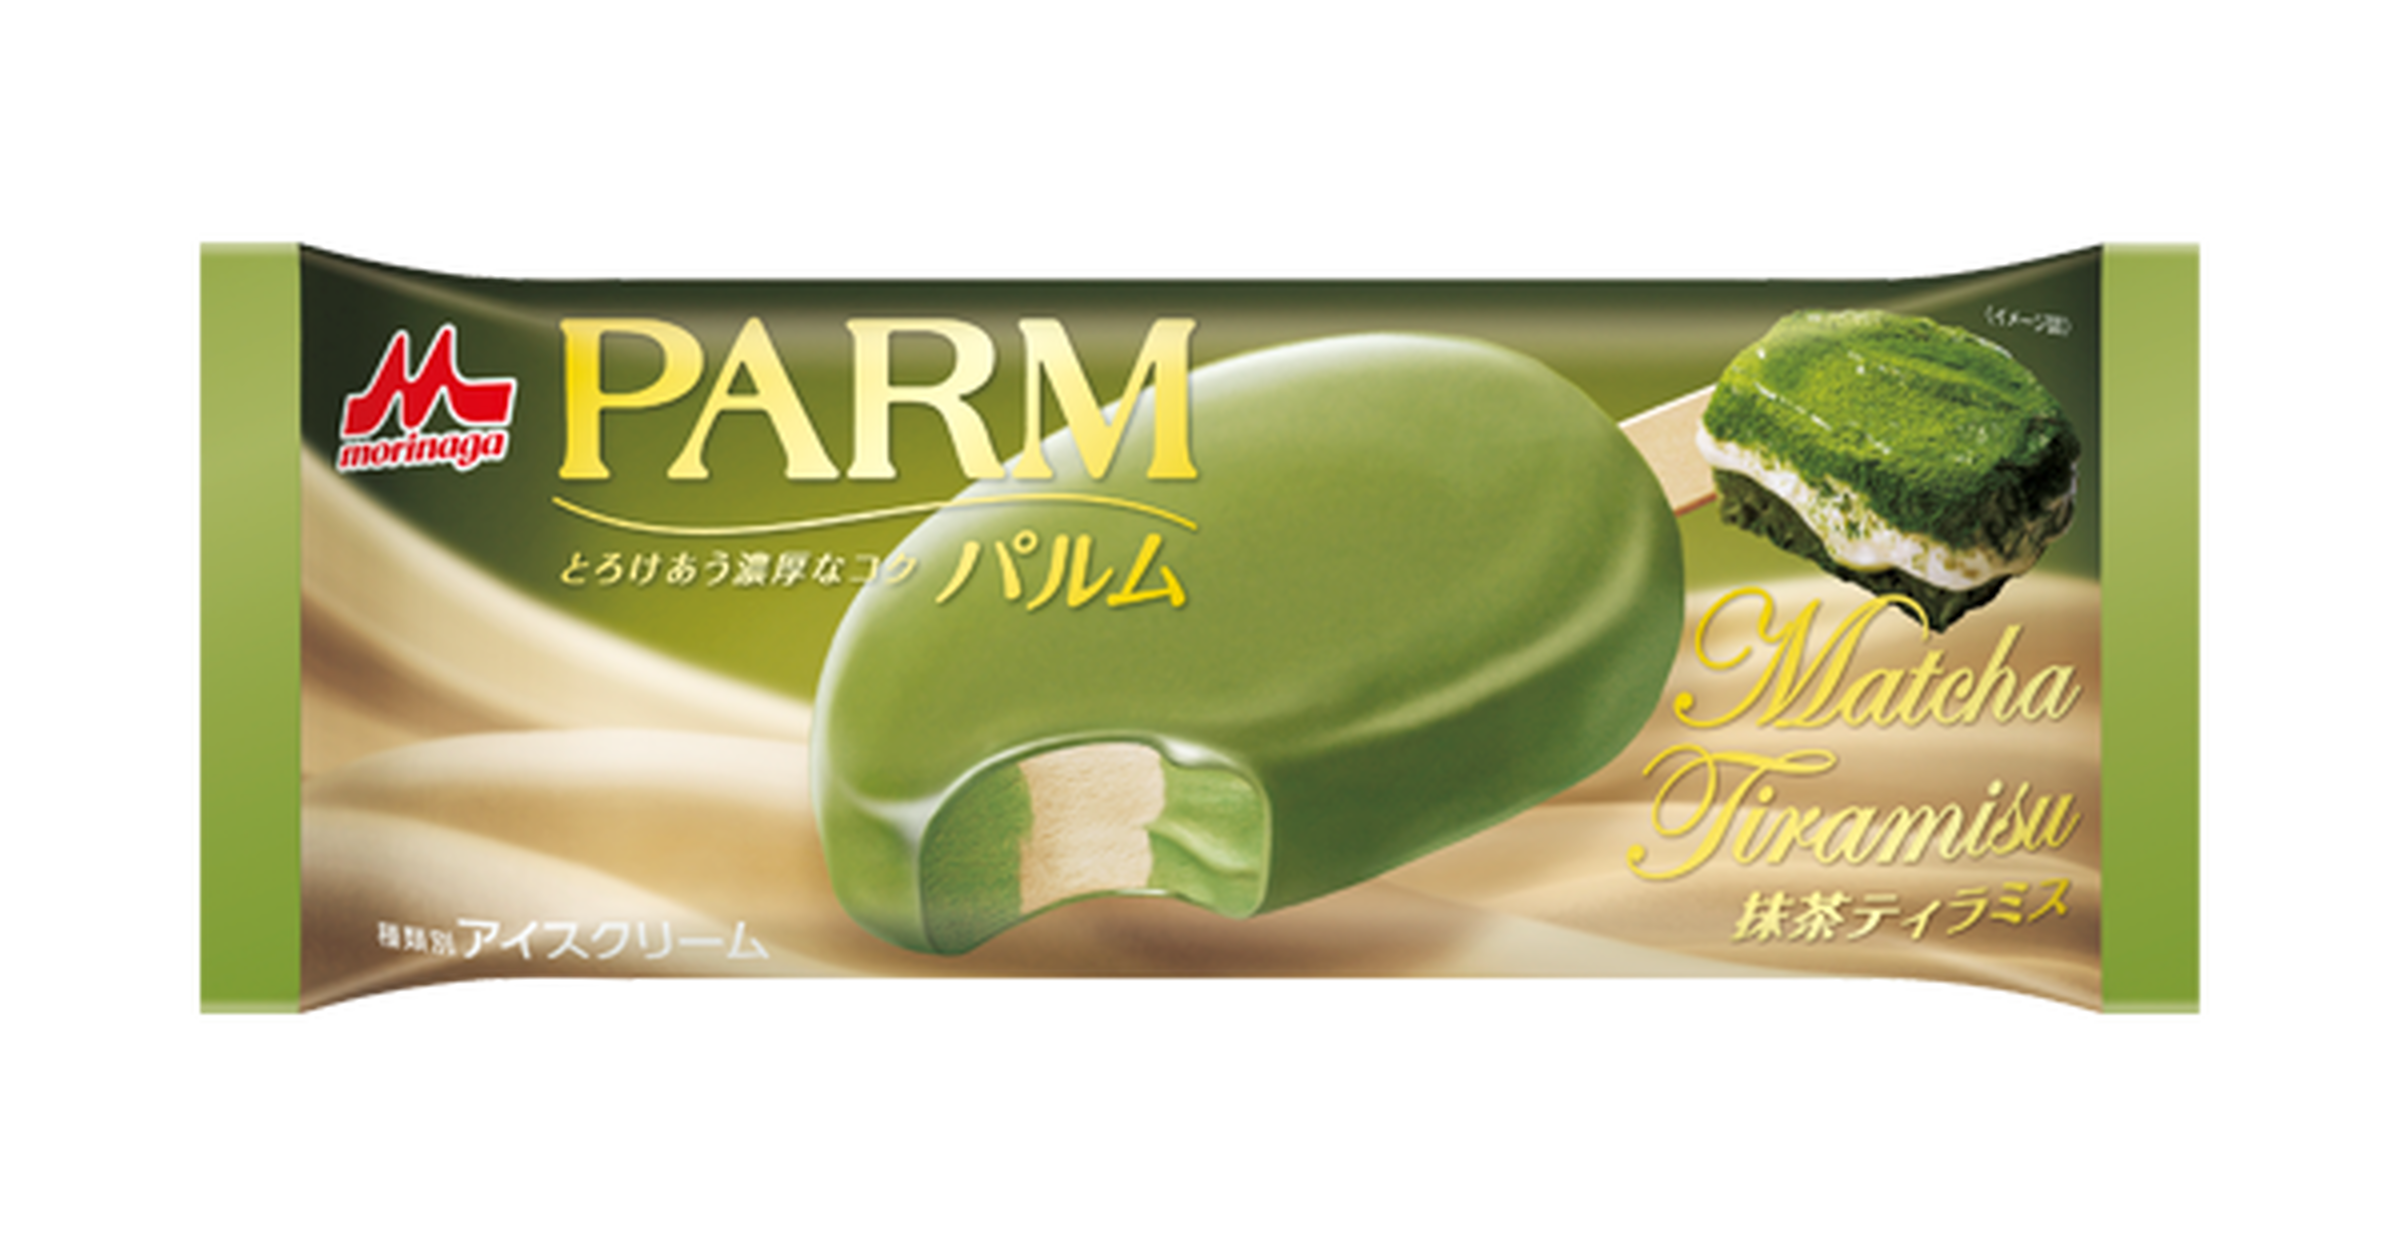 新商品 抹茶とマスカルポーネチーズの濃厚なフレーバー Parm パルム 抹茶ティラミス 発売 トクバイニュース